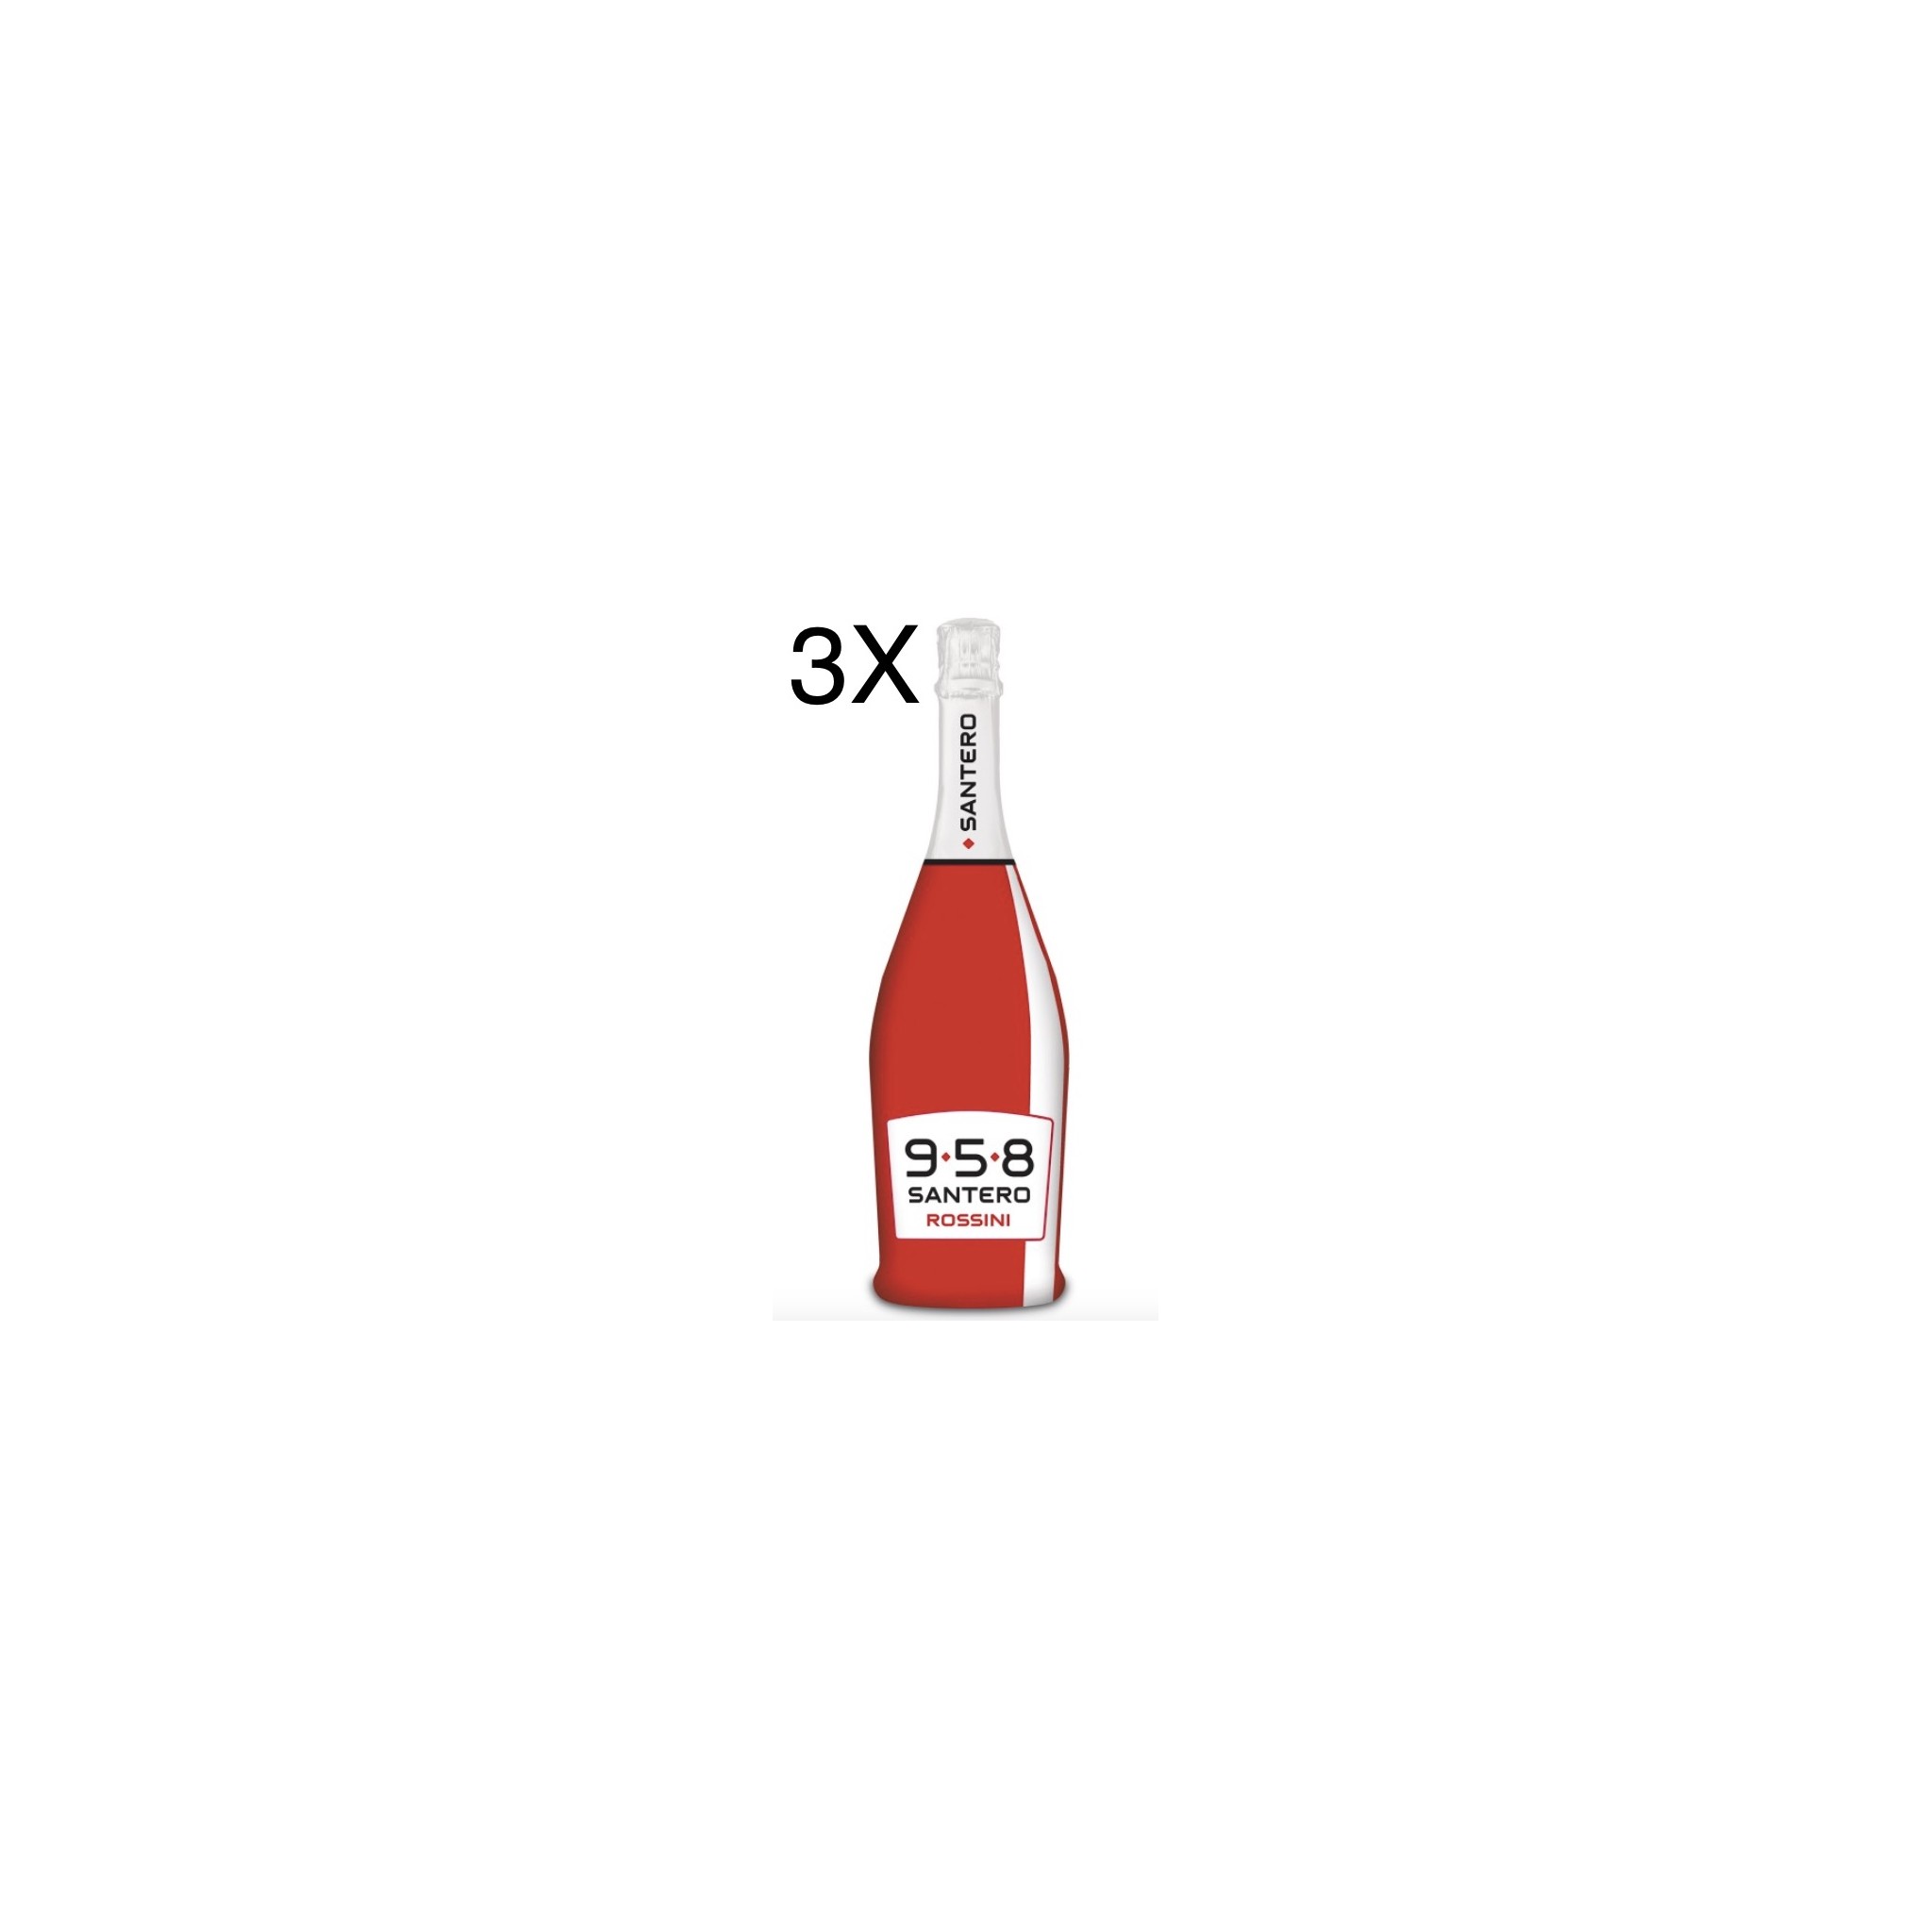 Santero 958 moscato e fragola 75 cl (3 bottiglie)